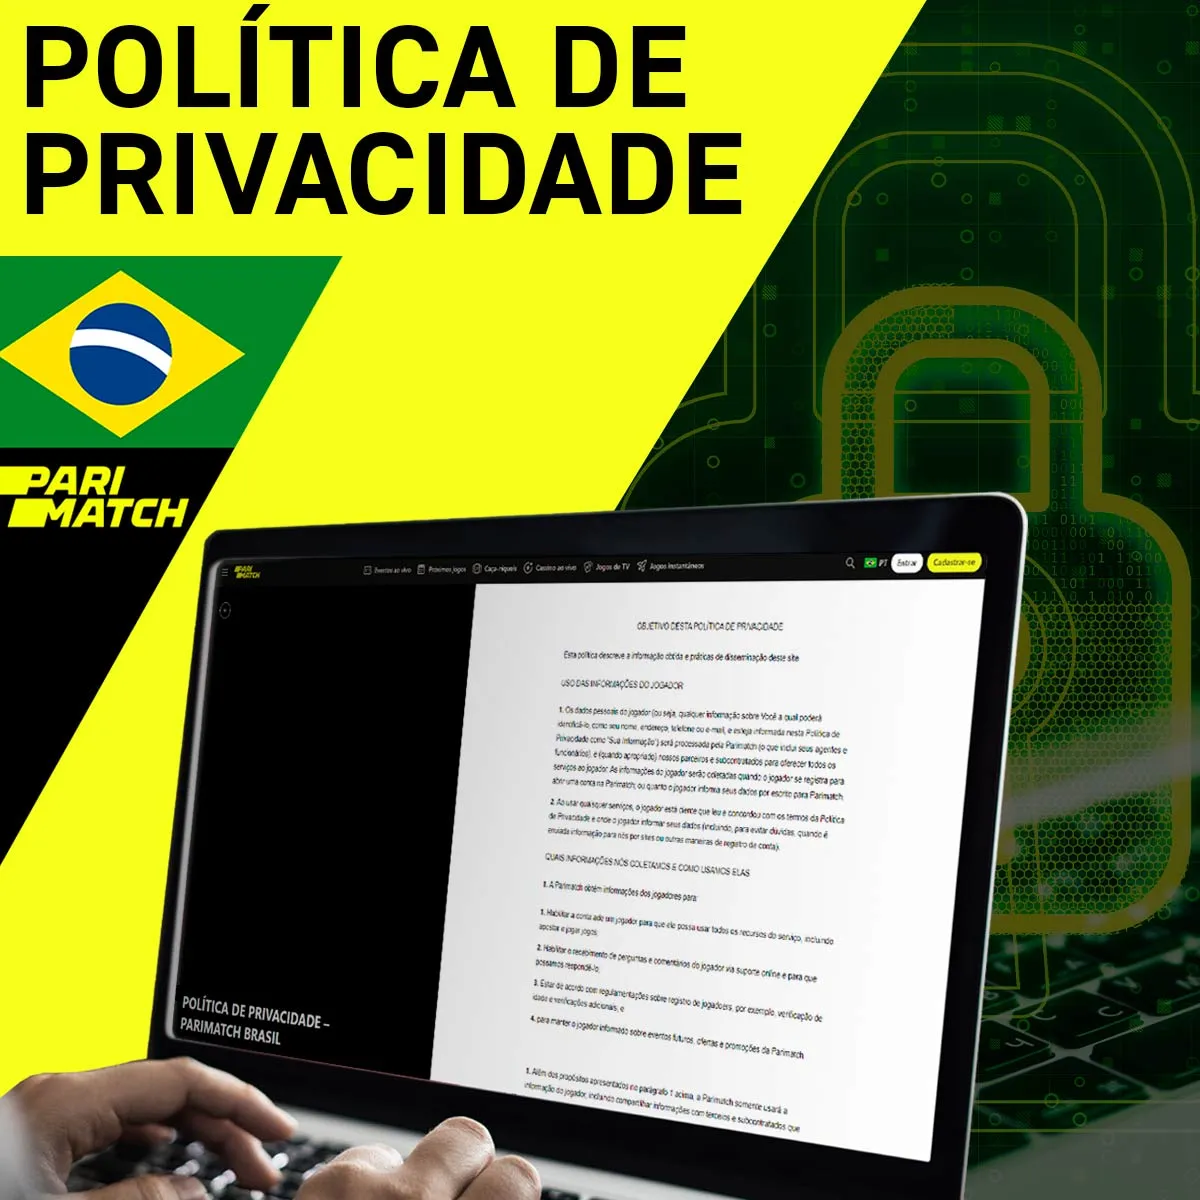 Política de privacidade da casa de apostas Parimatch no Brasil